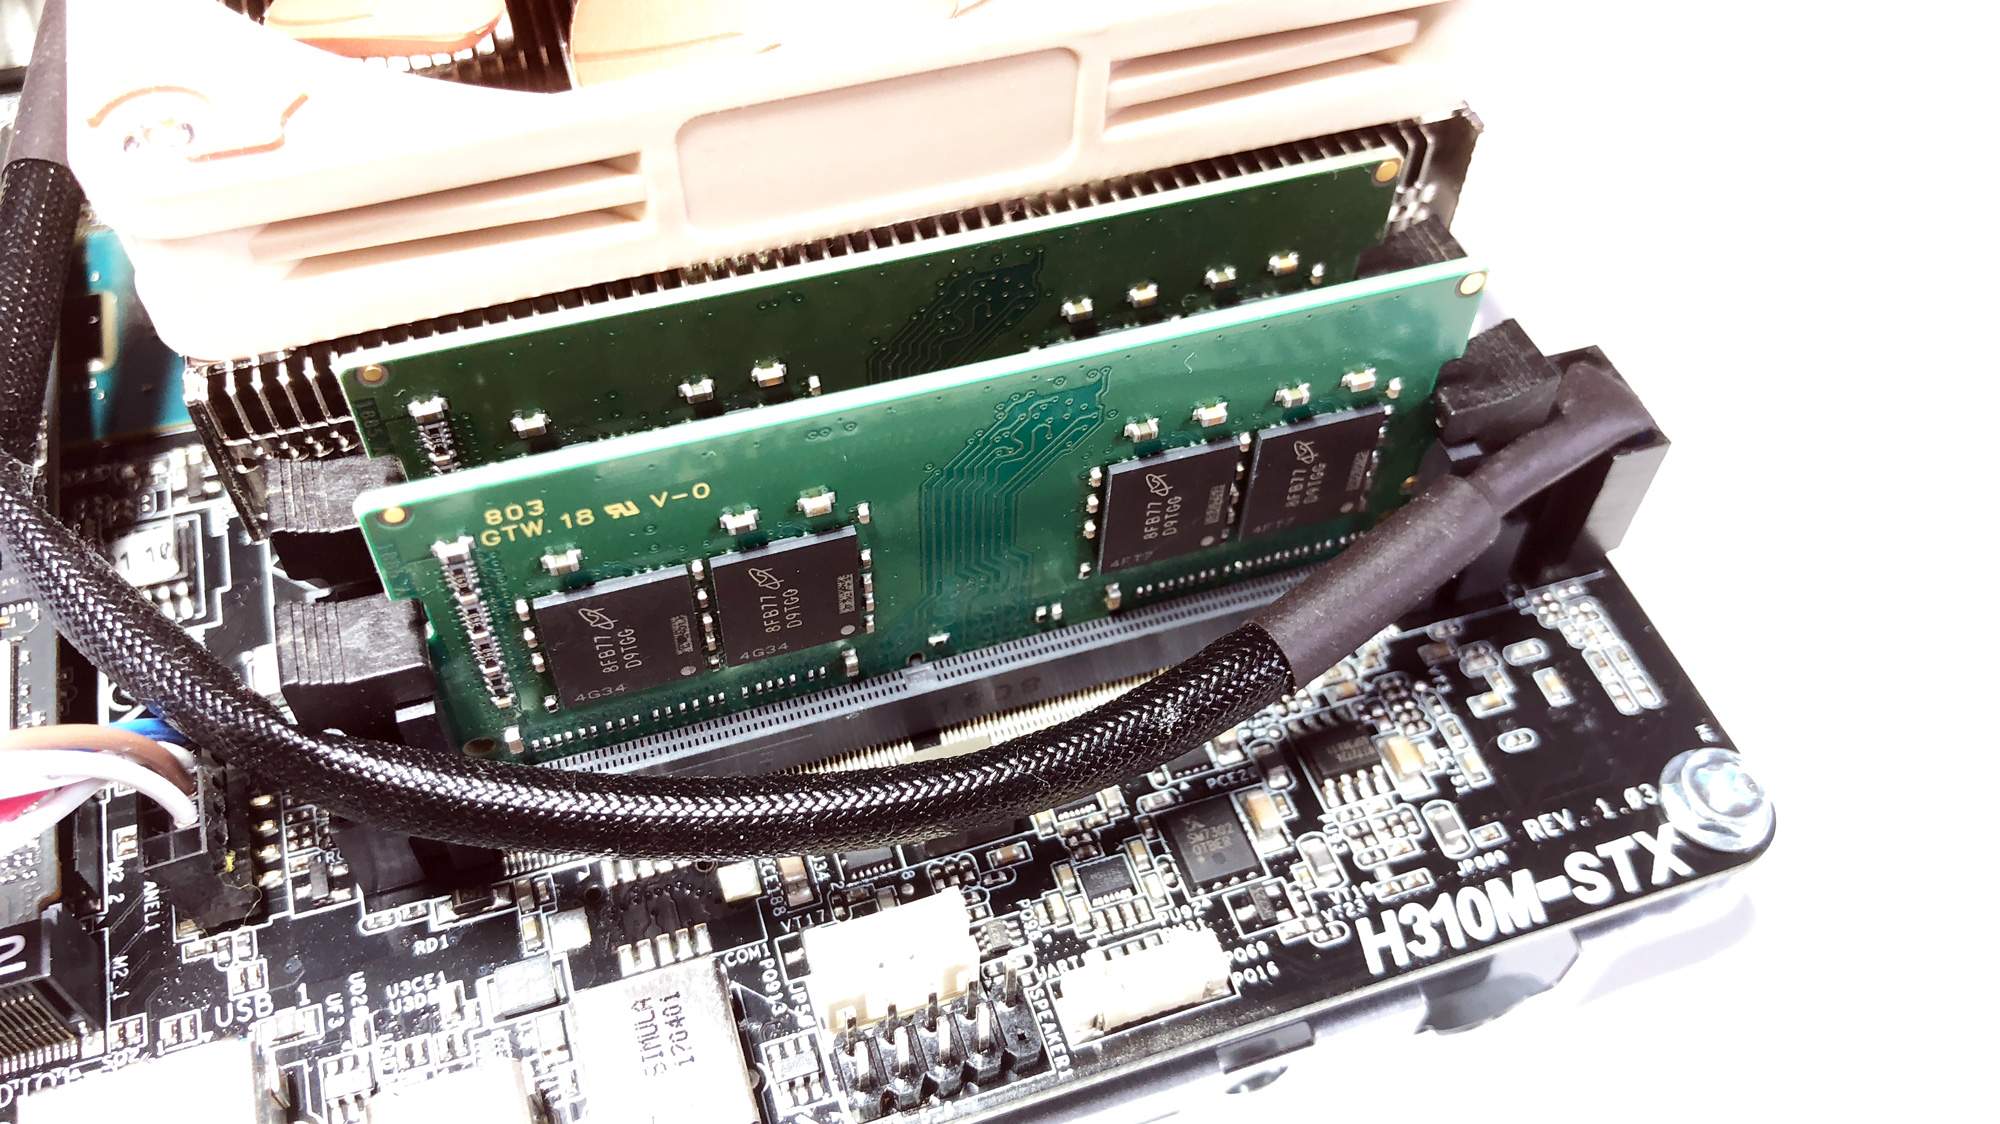 ASRock DeskMini 310 mit Intel Core i-5 CPU im Test